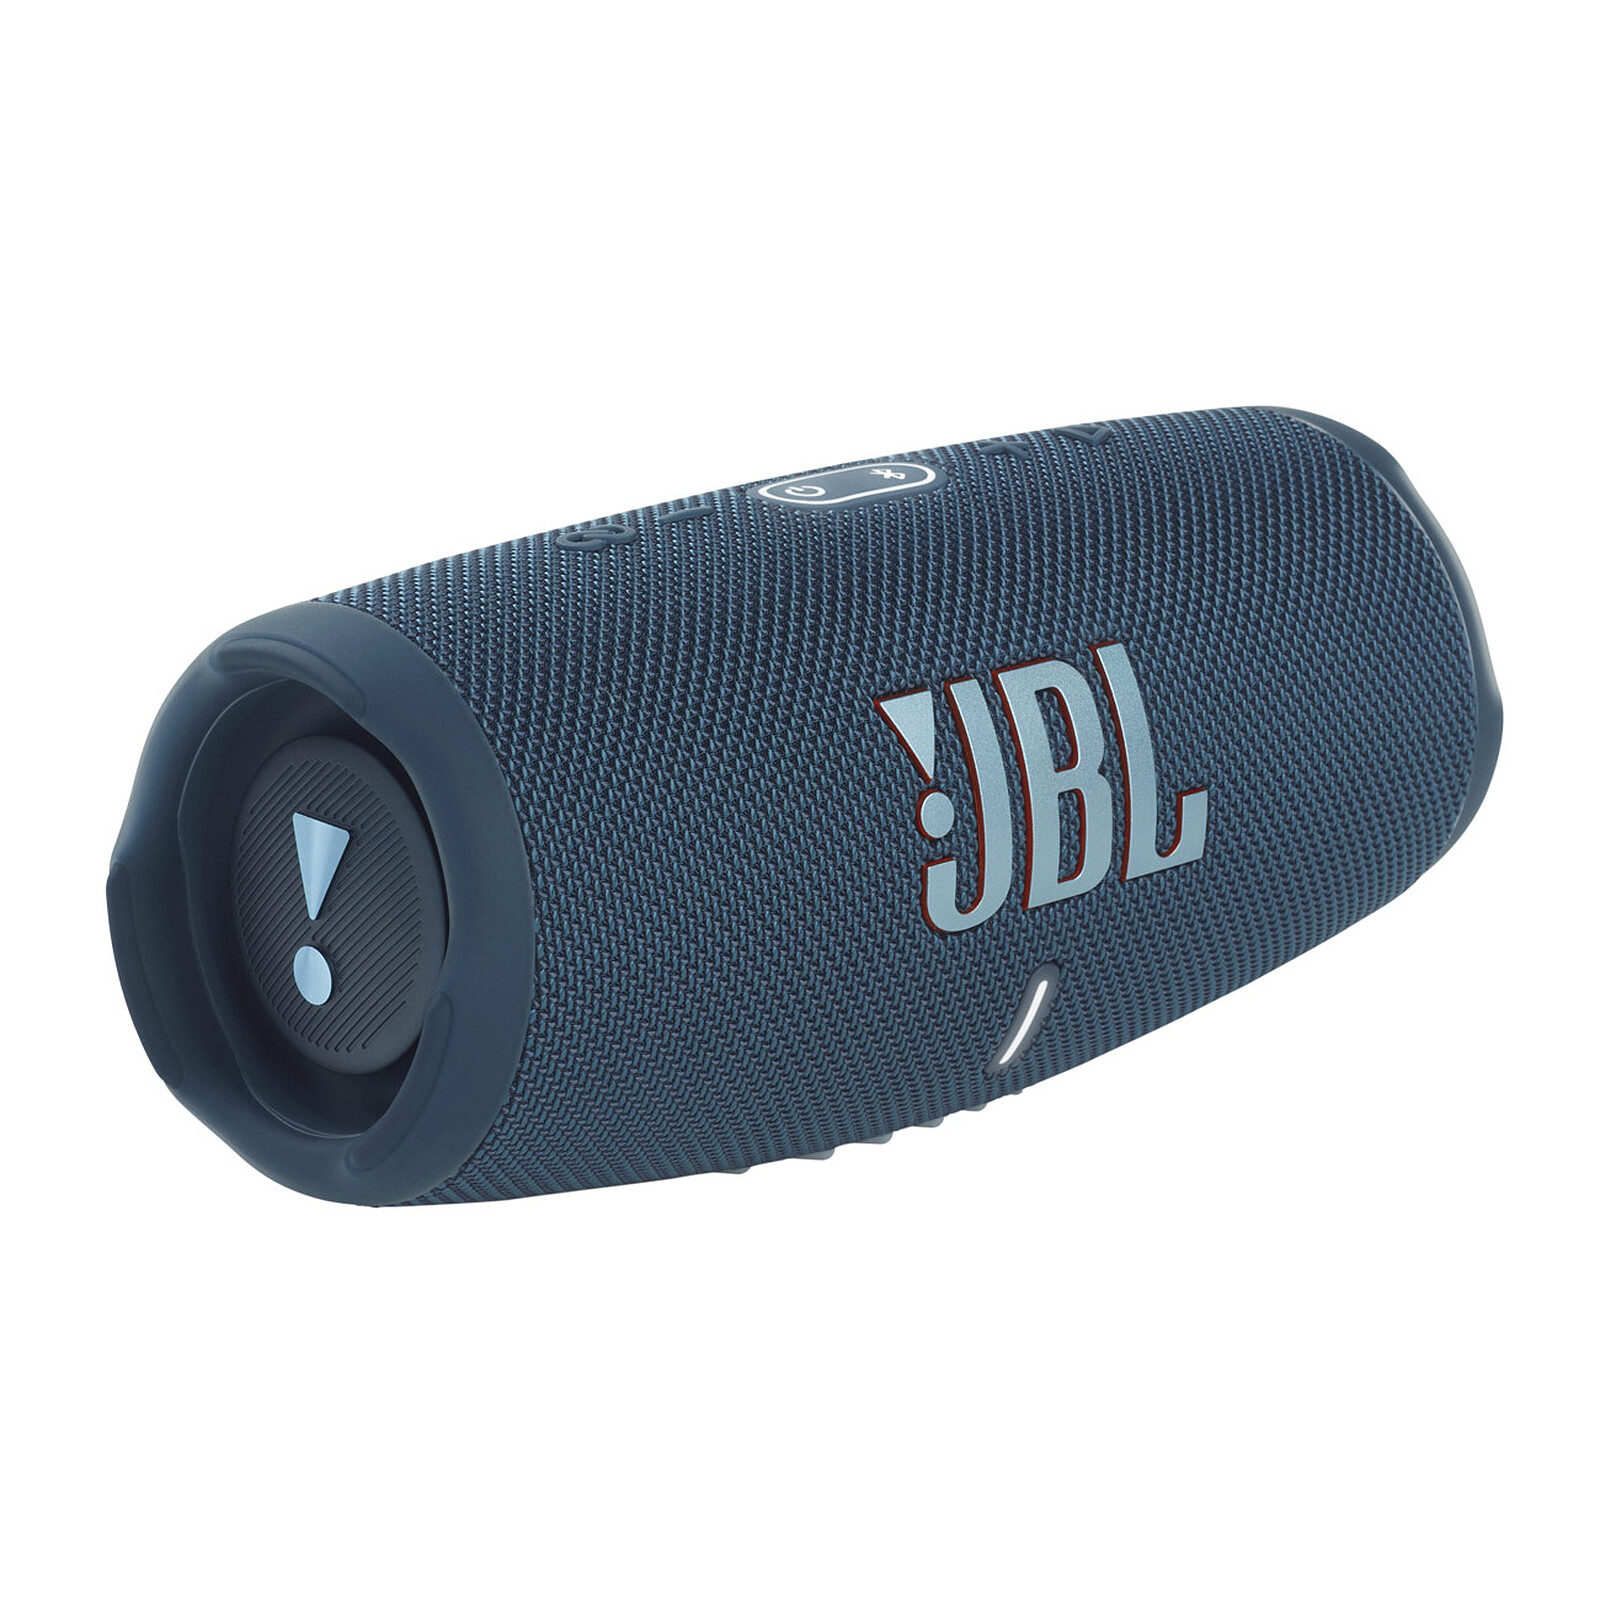 JBL Xtreme enceinte portable résistante aux projections d'eau - Bleu